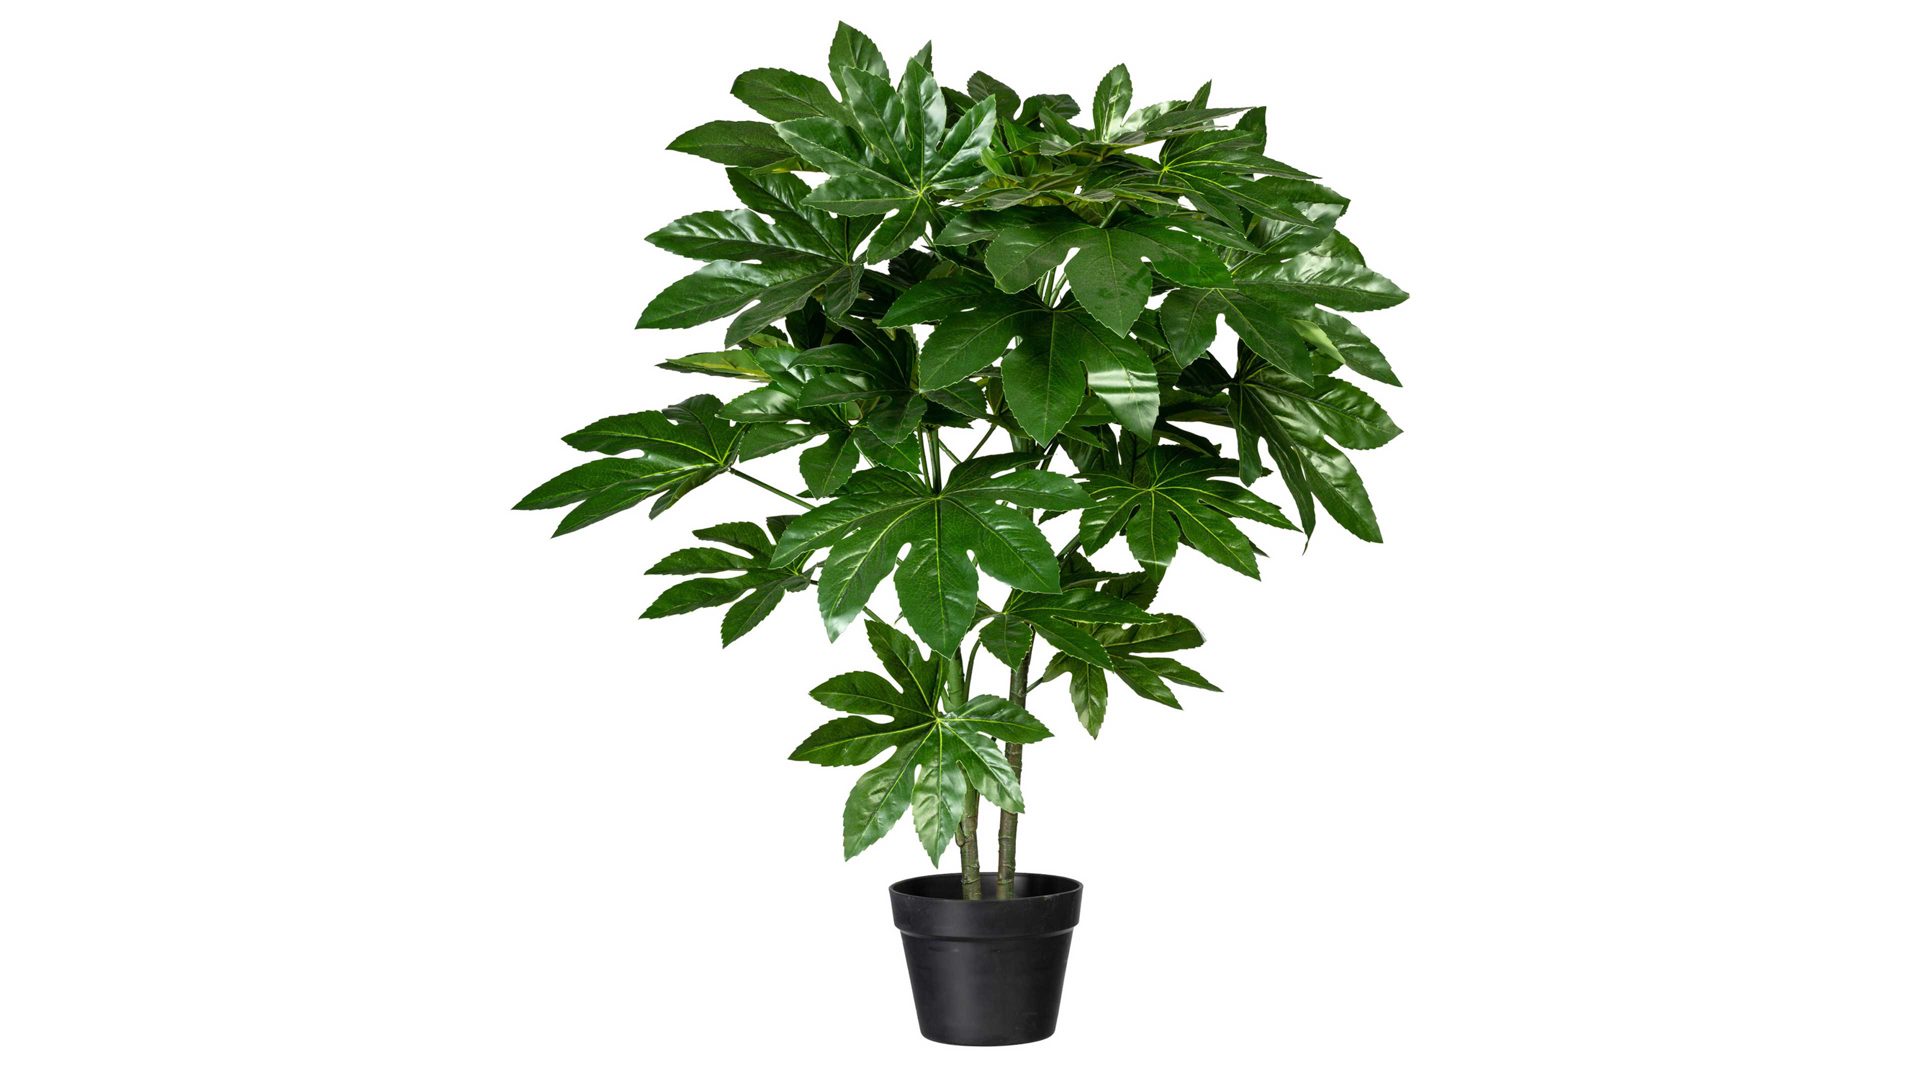 Pflanze Gasper aus Kunststoff in Grün Zimmeraralie Fatsia japonica grüner Kunststoff & schwarzer Topf – Höhe ca. 90 cm